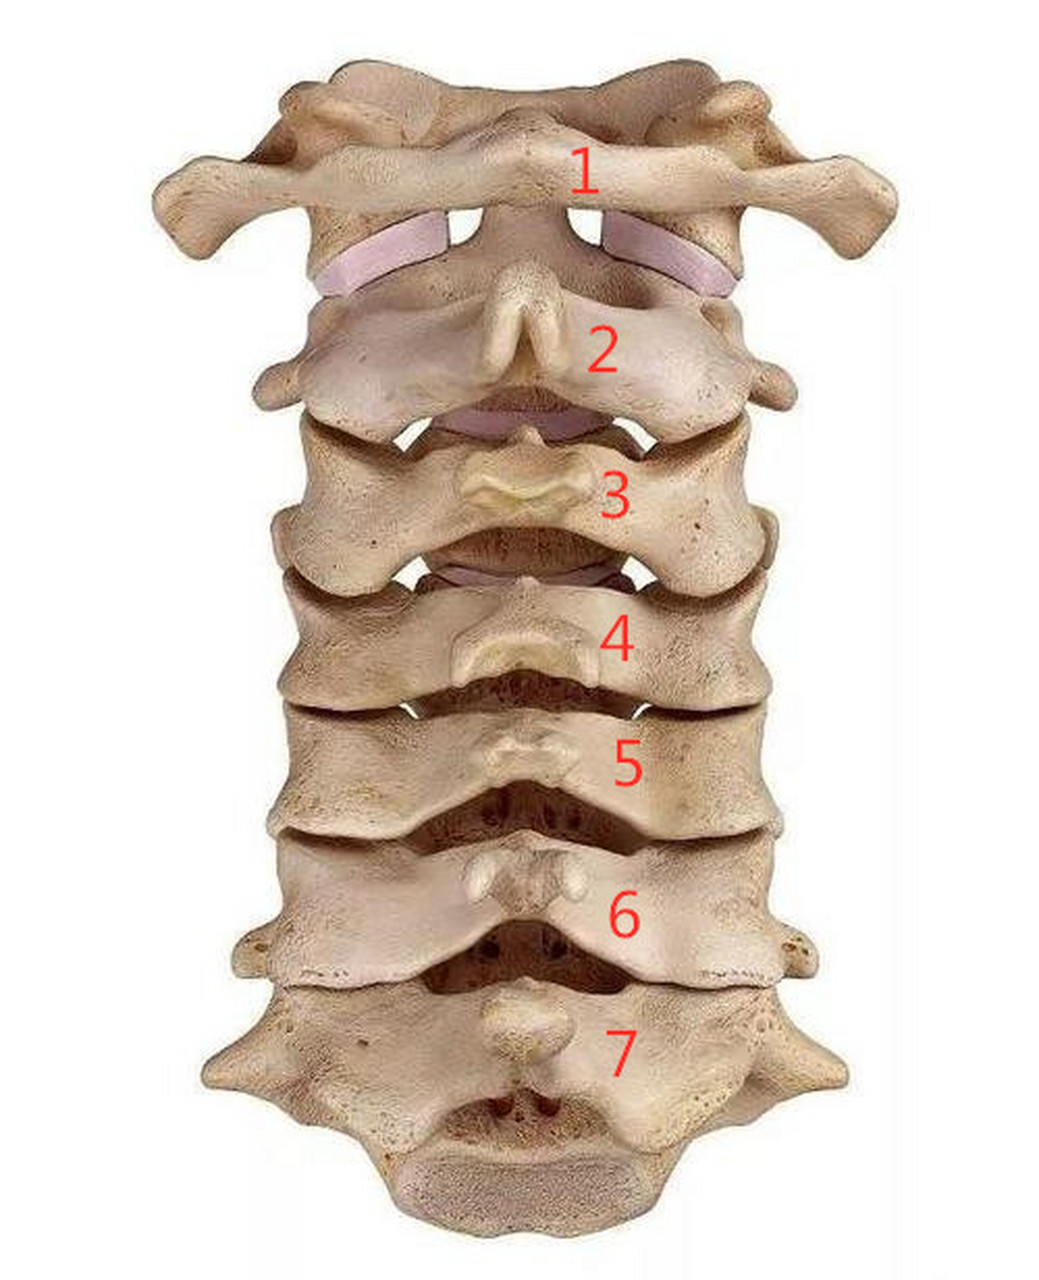 颈椎横突在哪里图片